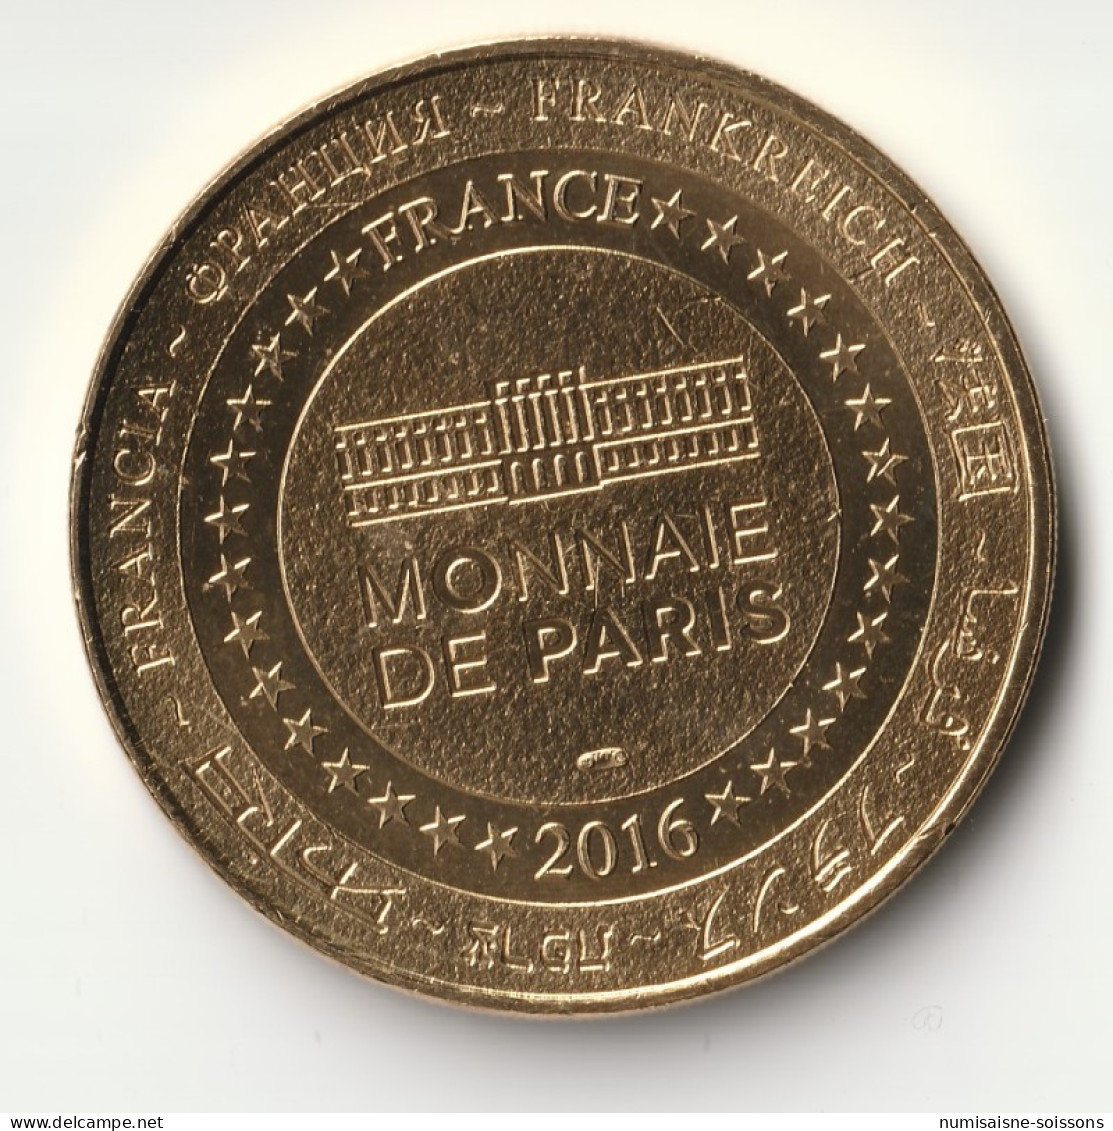 13 - MARIGNANE - LE MUSÉE - RAIMU - 1883-1946 - Monnaie De Paris - 2016 - 2016